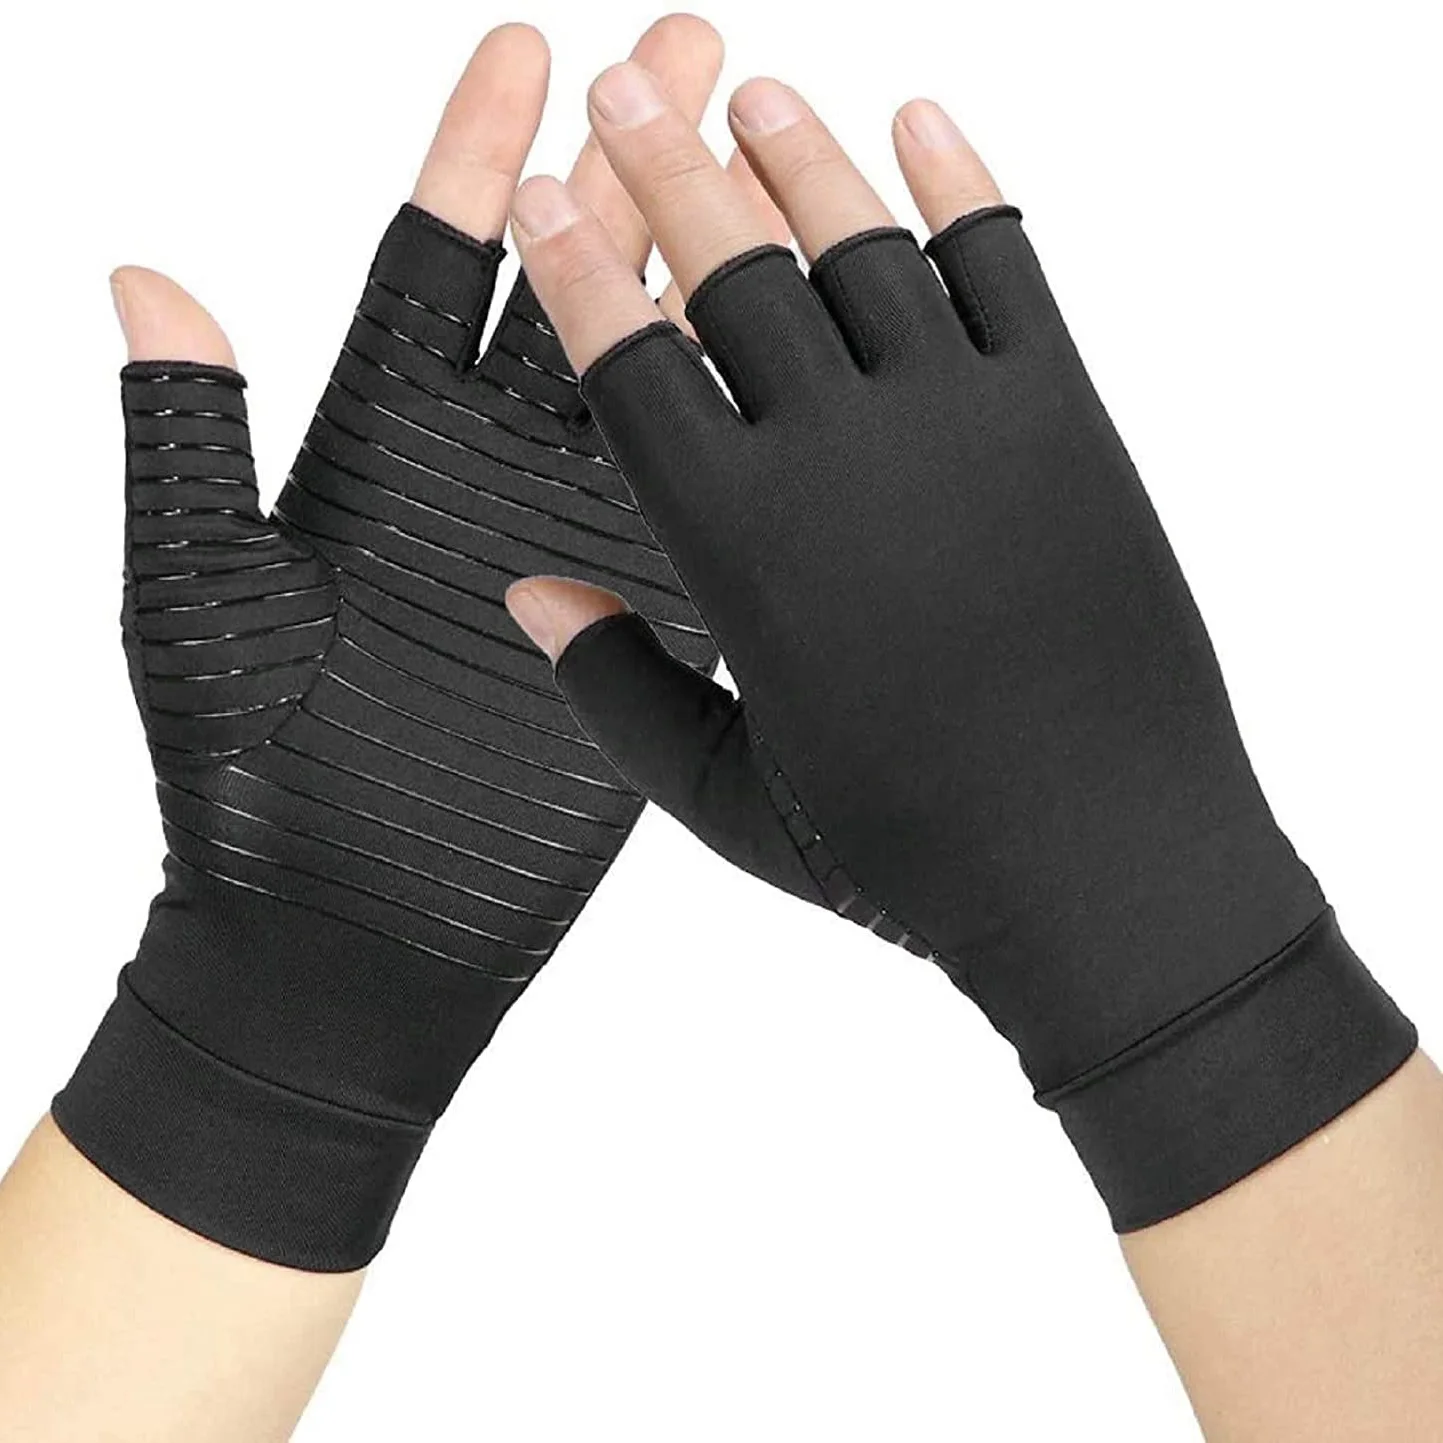 

Arthritis Compression Gloves Copper Fiber Comfort Arthritis Glove for Rheumatoid Arthritis Carpal Tunnel Therapy Wrist